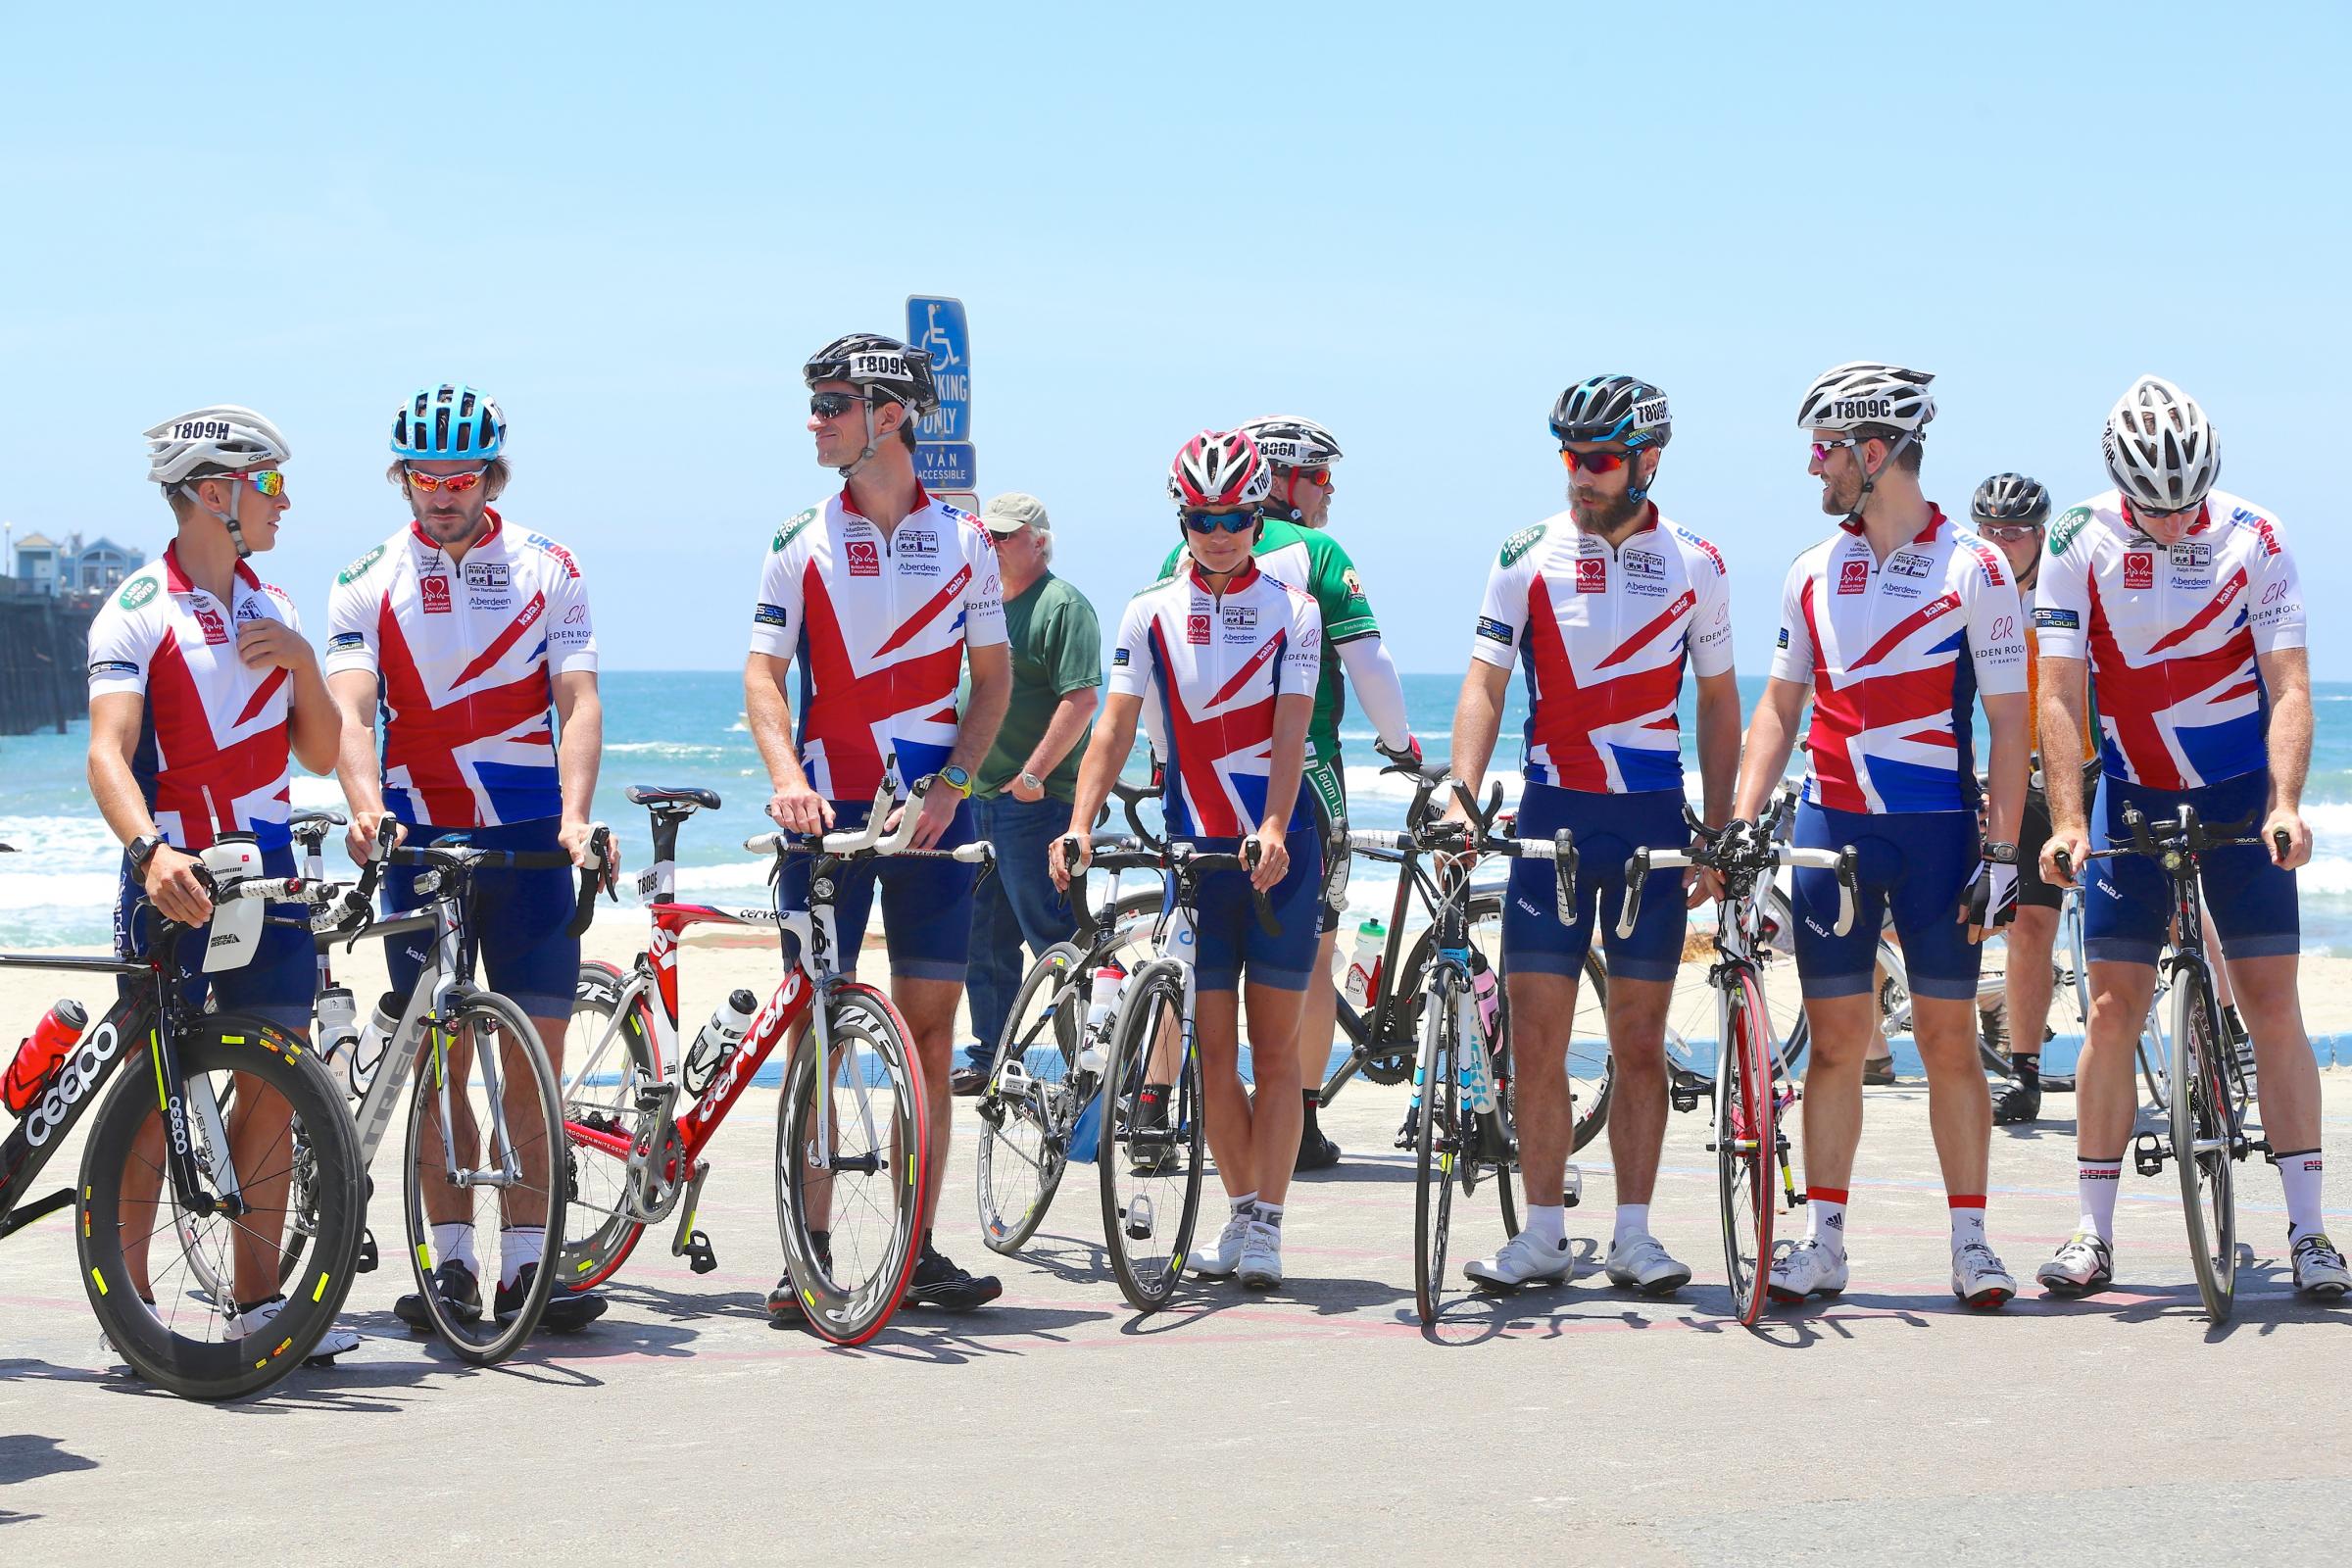 Pippa Middleton, 3mila km in bici per beneficenza02